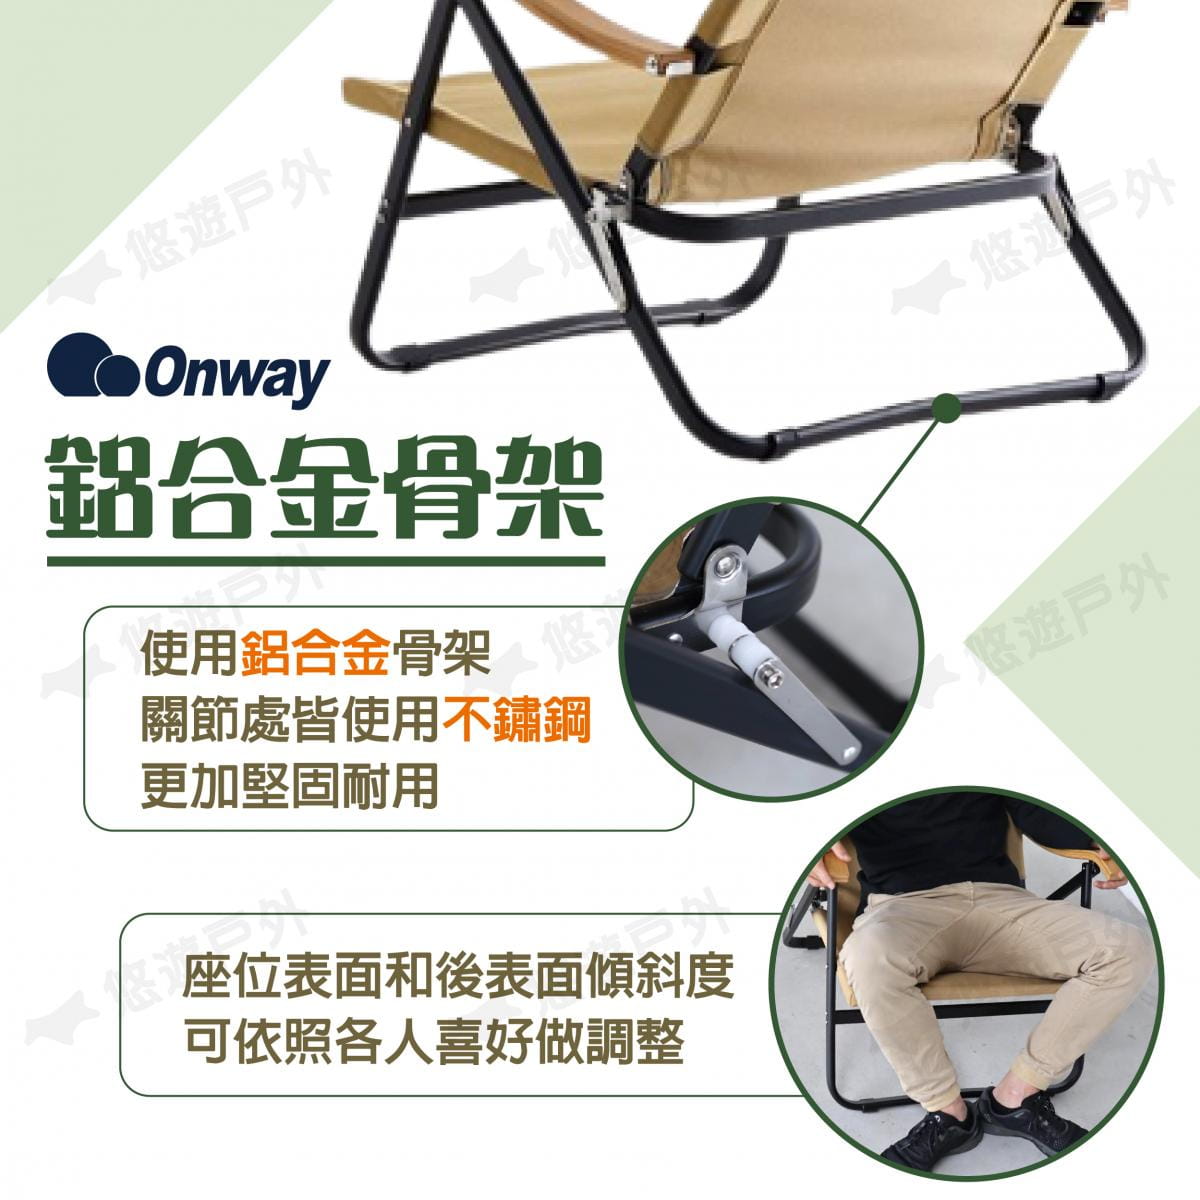 【ONWAY】舒適木質扶手低椅升級版 OW-61BD-BMPLUS (悠遊戶外) 2